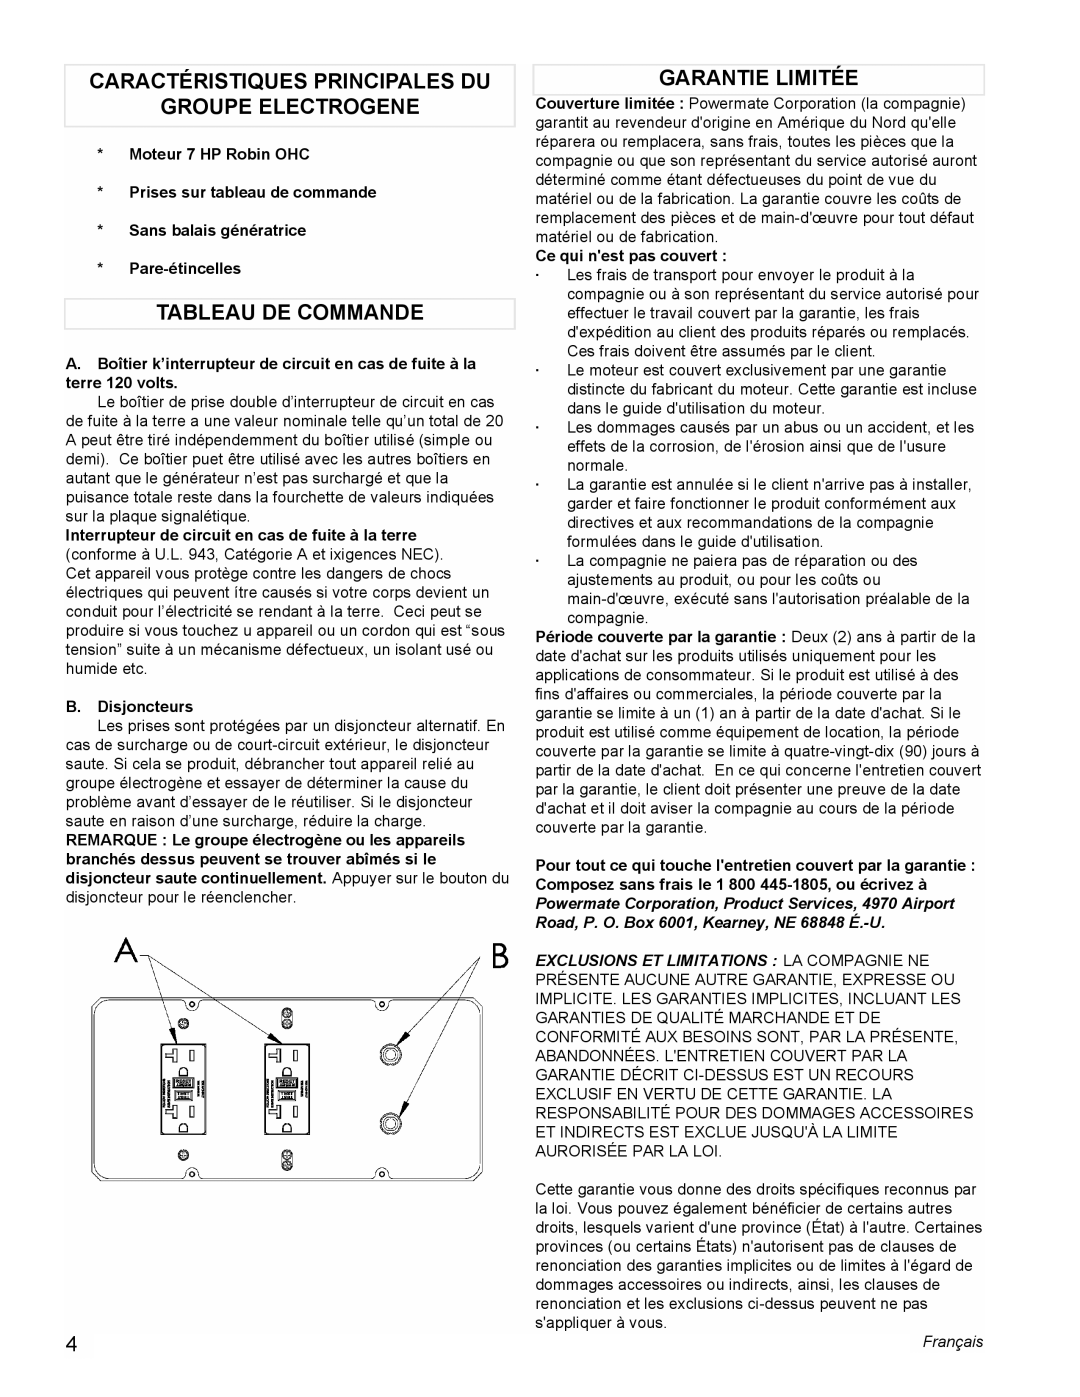 Powermate PMC603250 Caractéristiques Principales Du, Groupe Electrogene, Tableau De Commande, Garantie Limitée, Français 